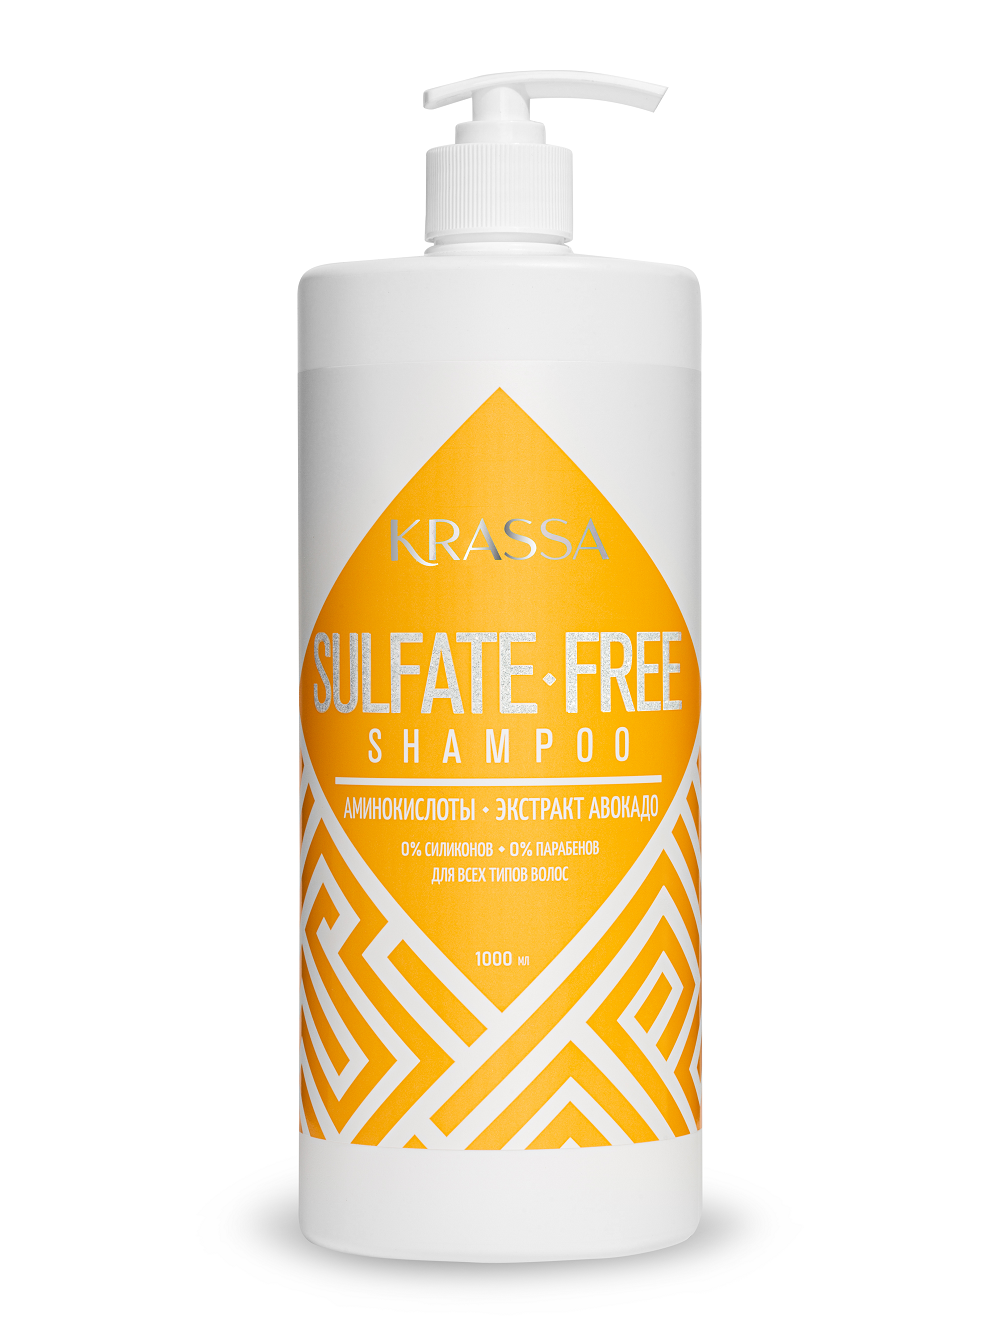 Купить Шампунь для волос KRASSA бессульфатный Sulfate-free, 1000 мл, KRASSA Professional